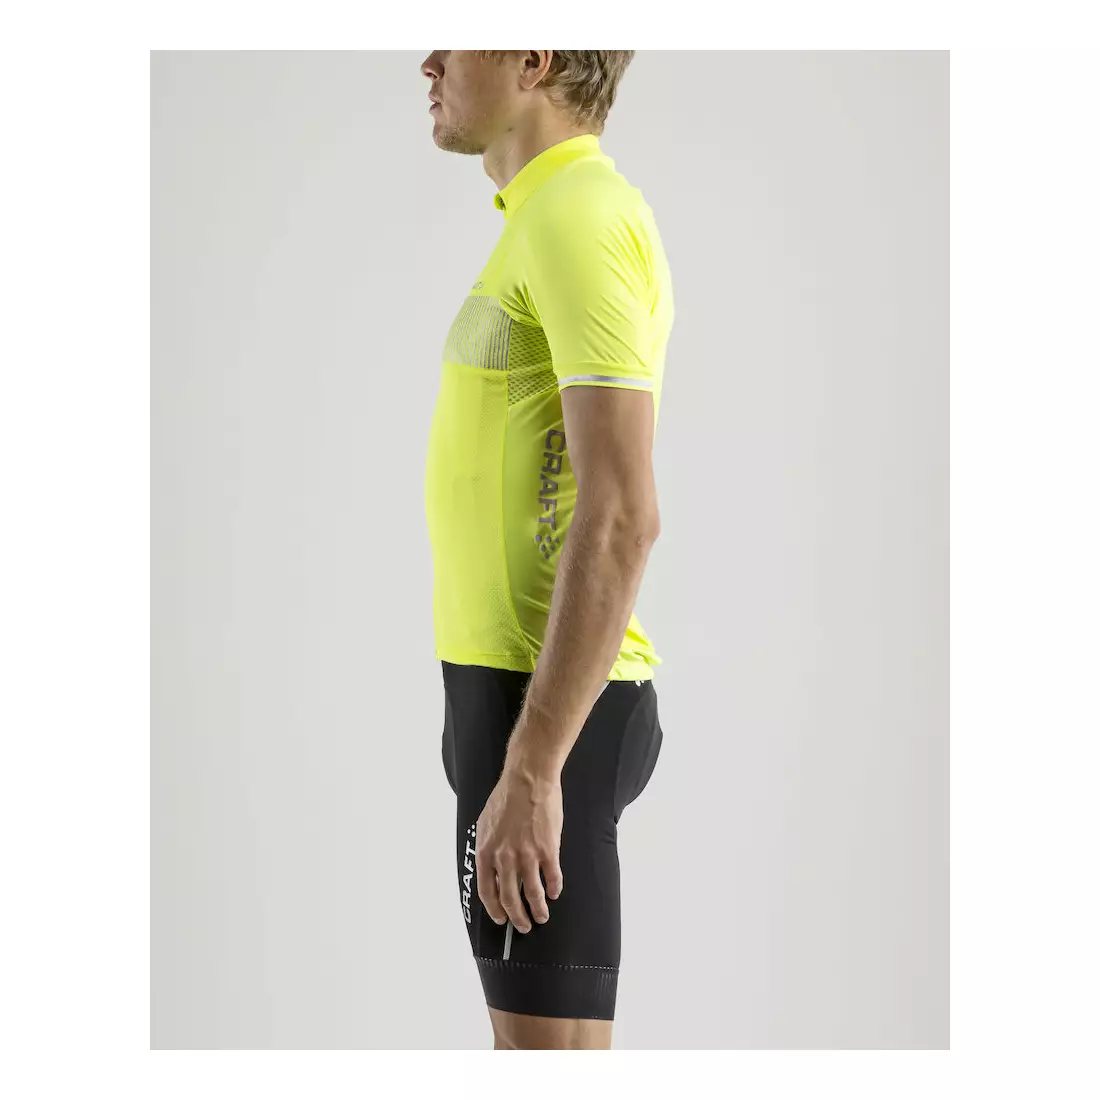 CRAFT Verve Glow pánský cyklistický dres, fluorově žlutý, 1904995-2809